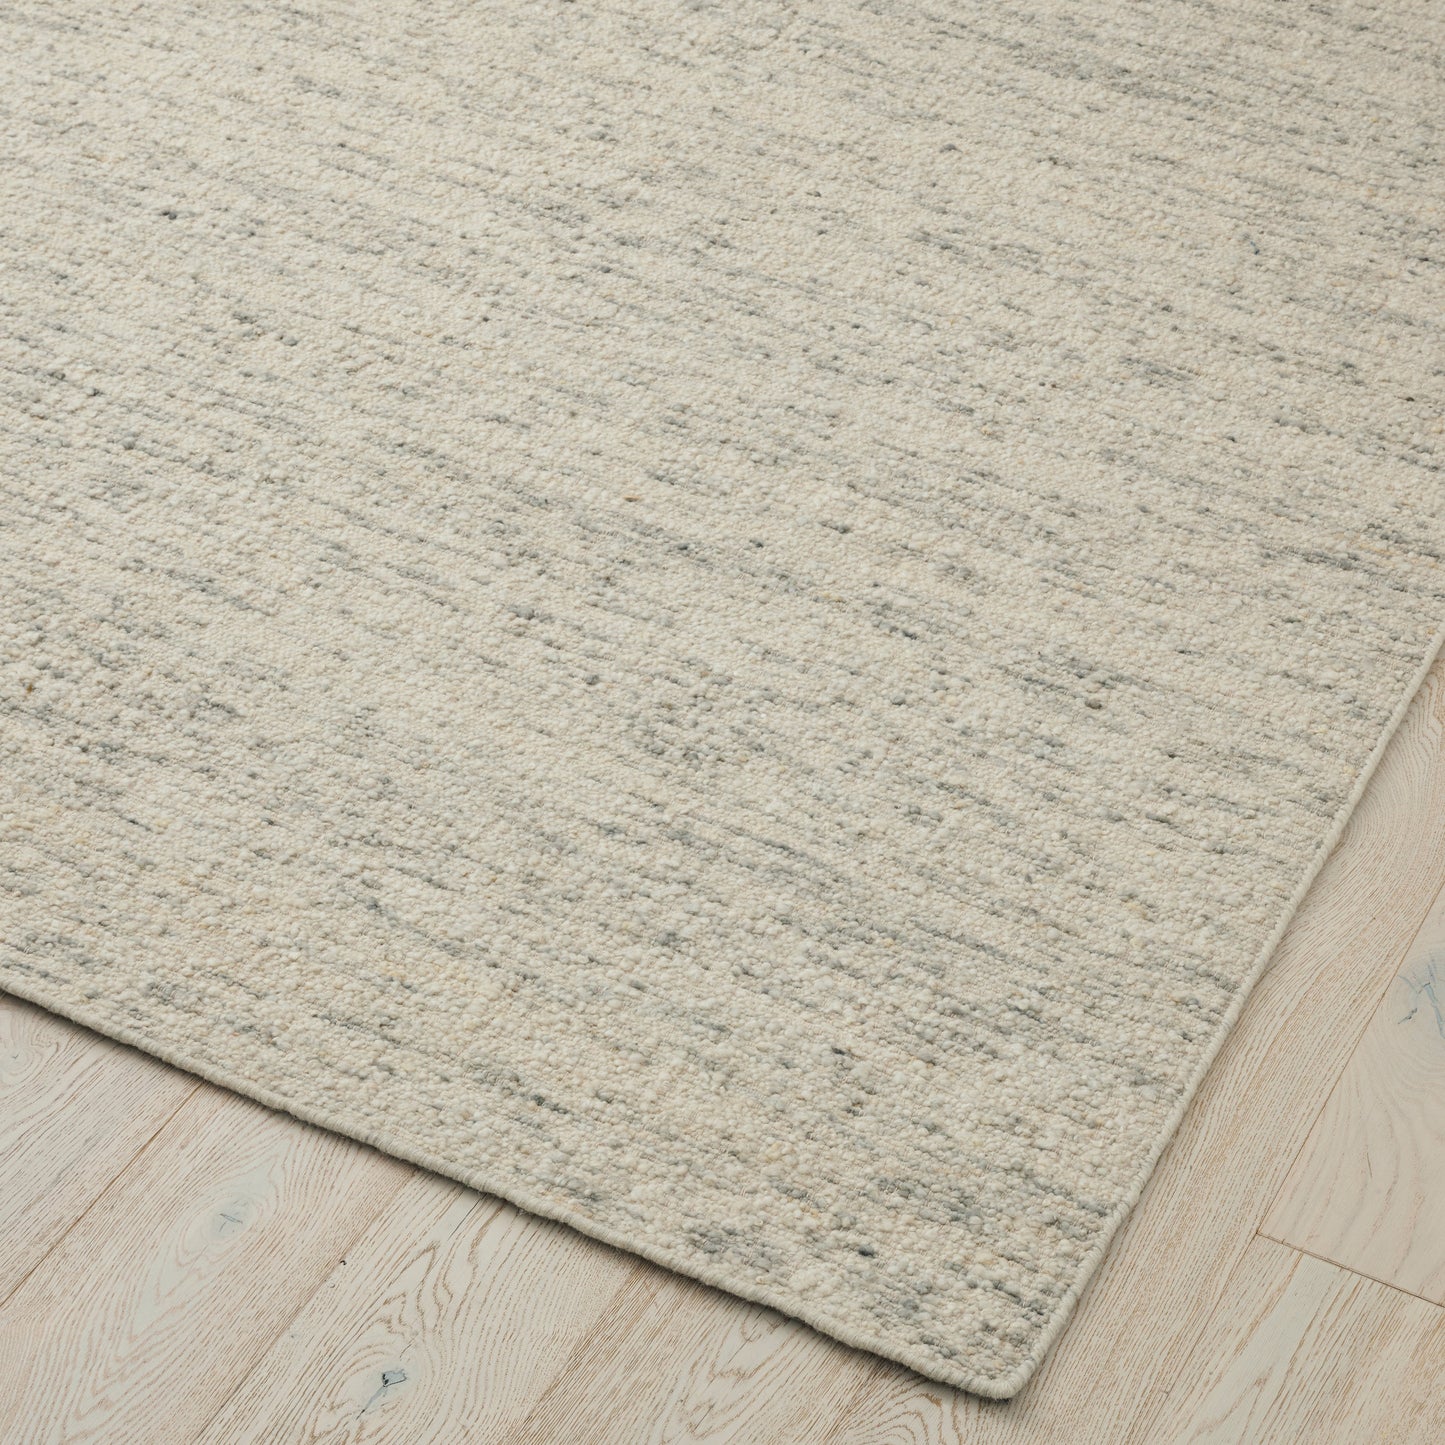 Bouclé-texture  2m x 3m  Rug | 100% NZ Wool